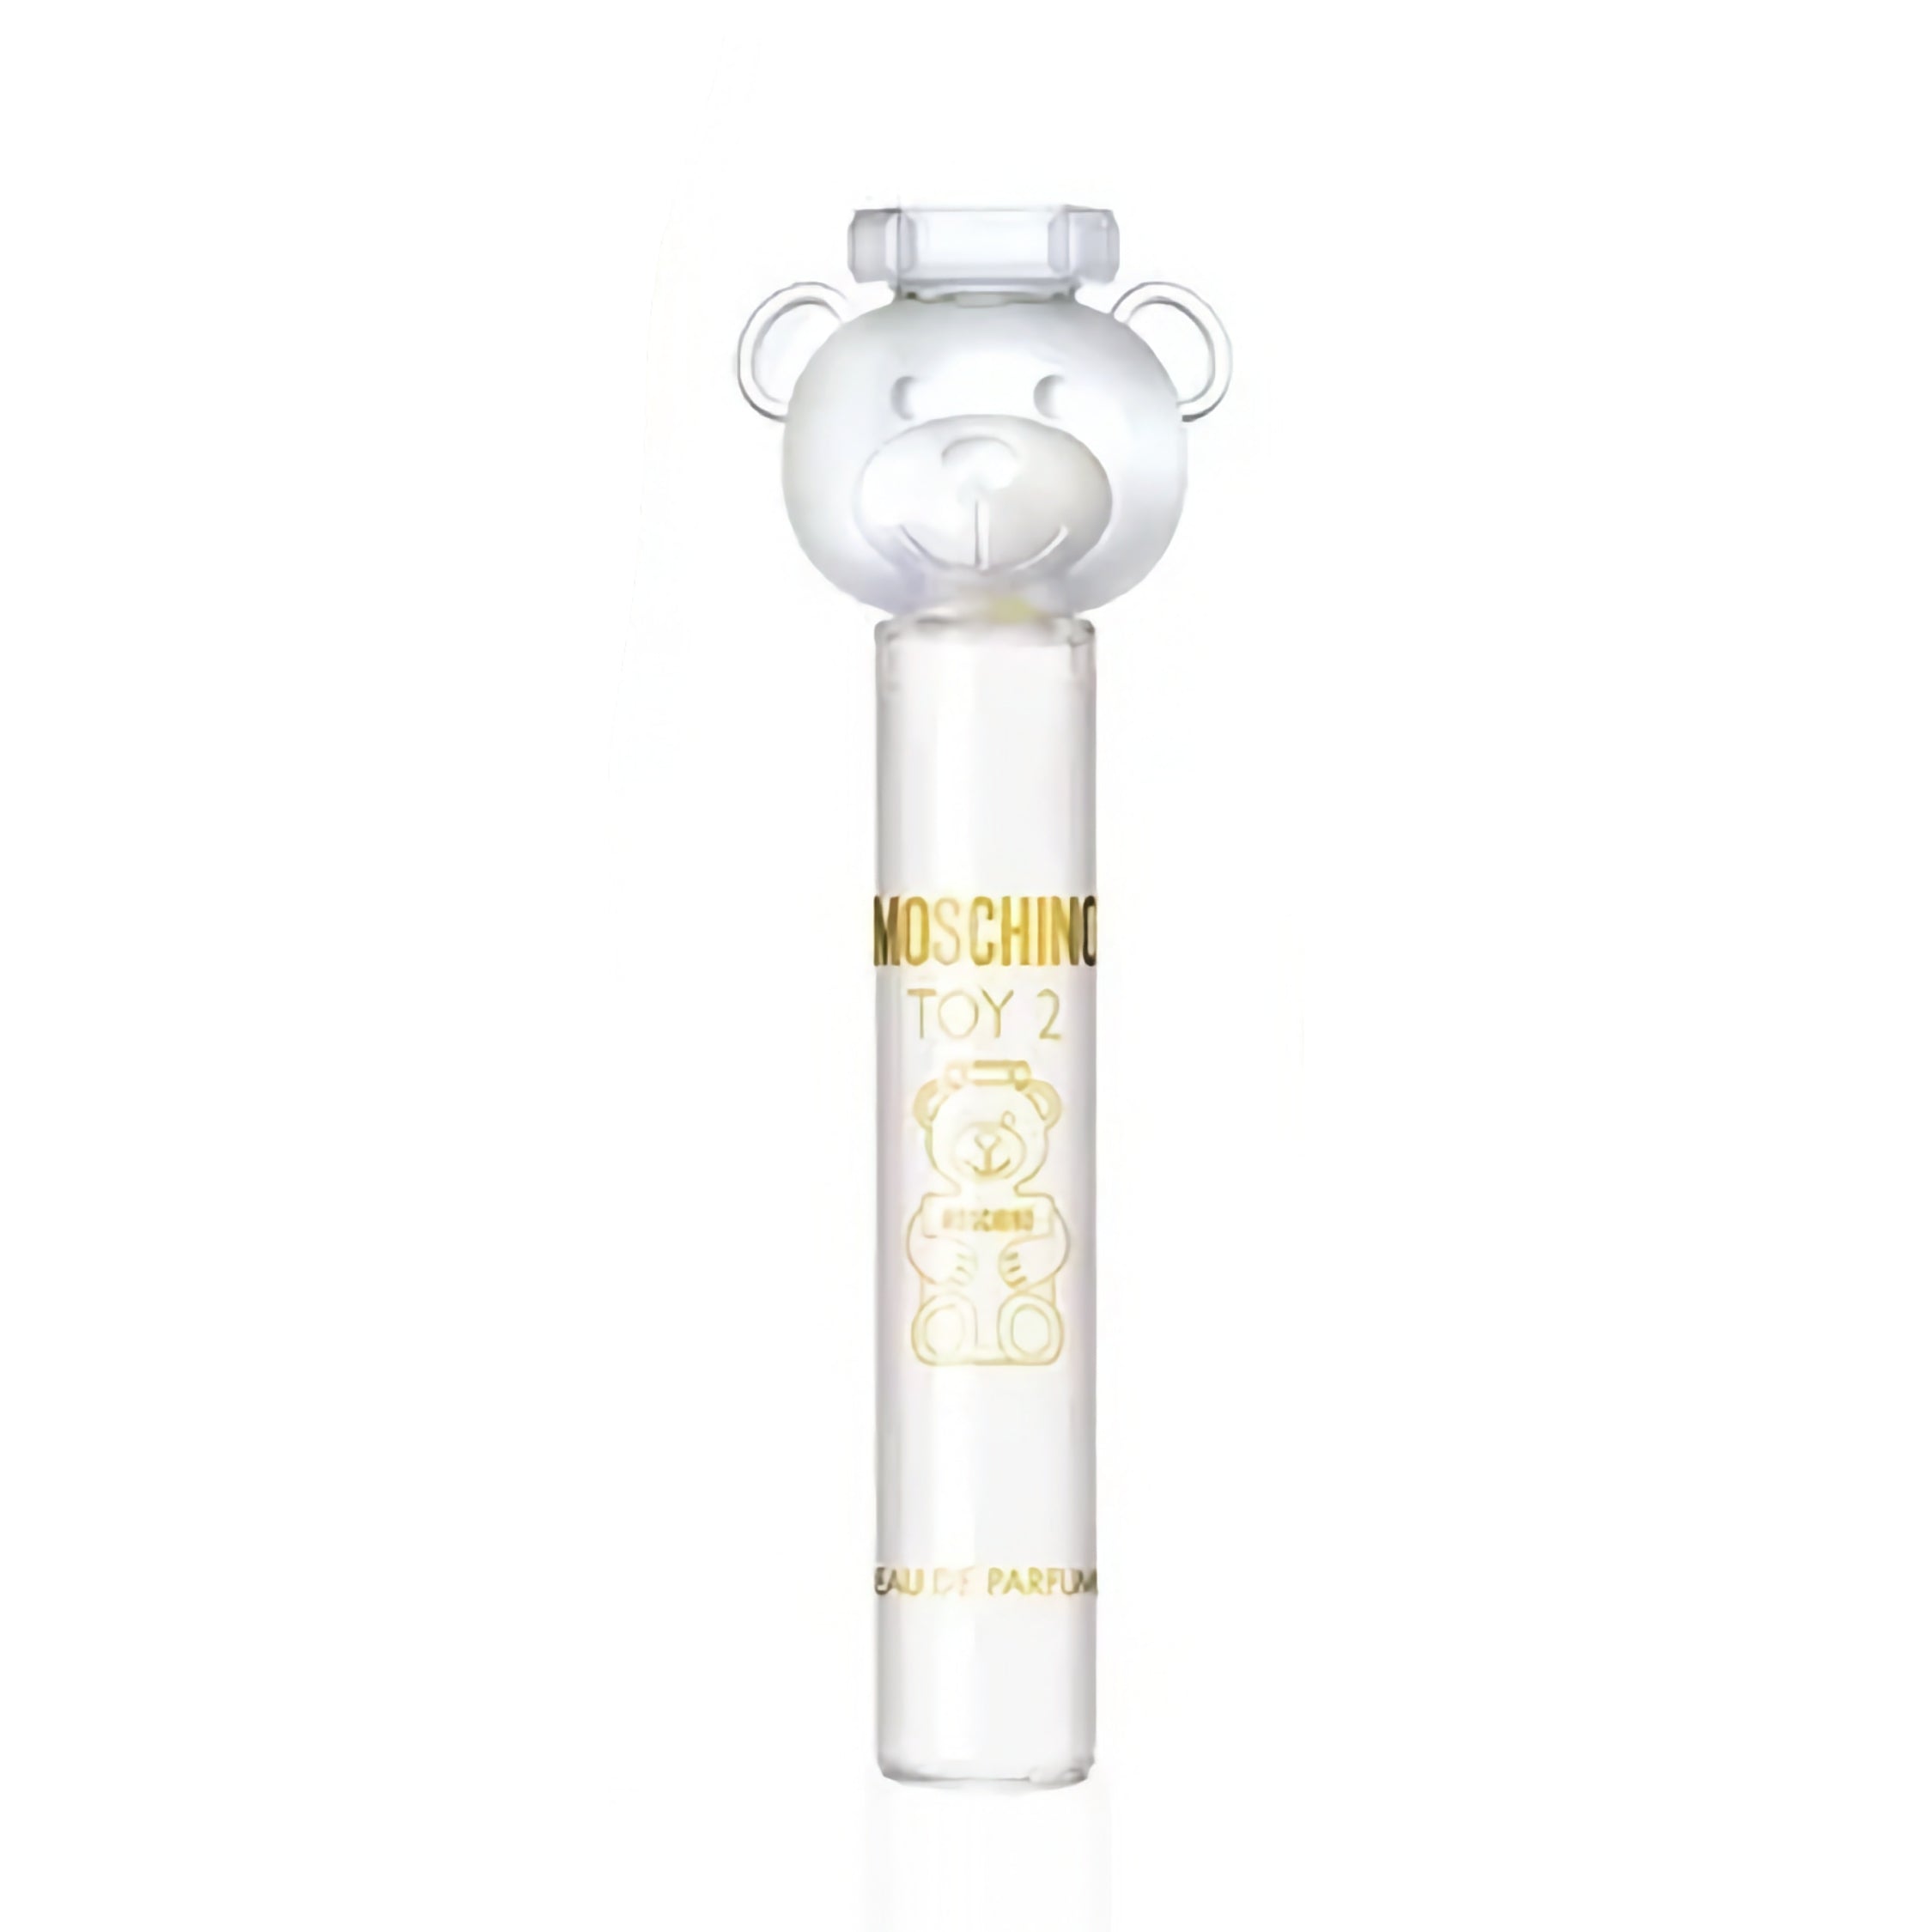 Moschino - Toy 2 - Miniatura - Eau de Parfum (STAR)